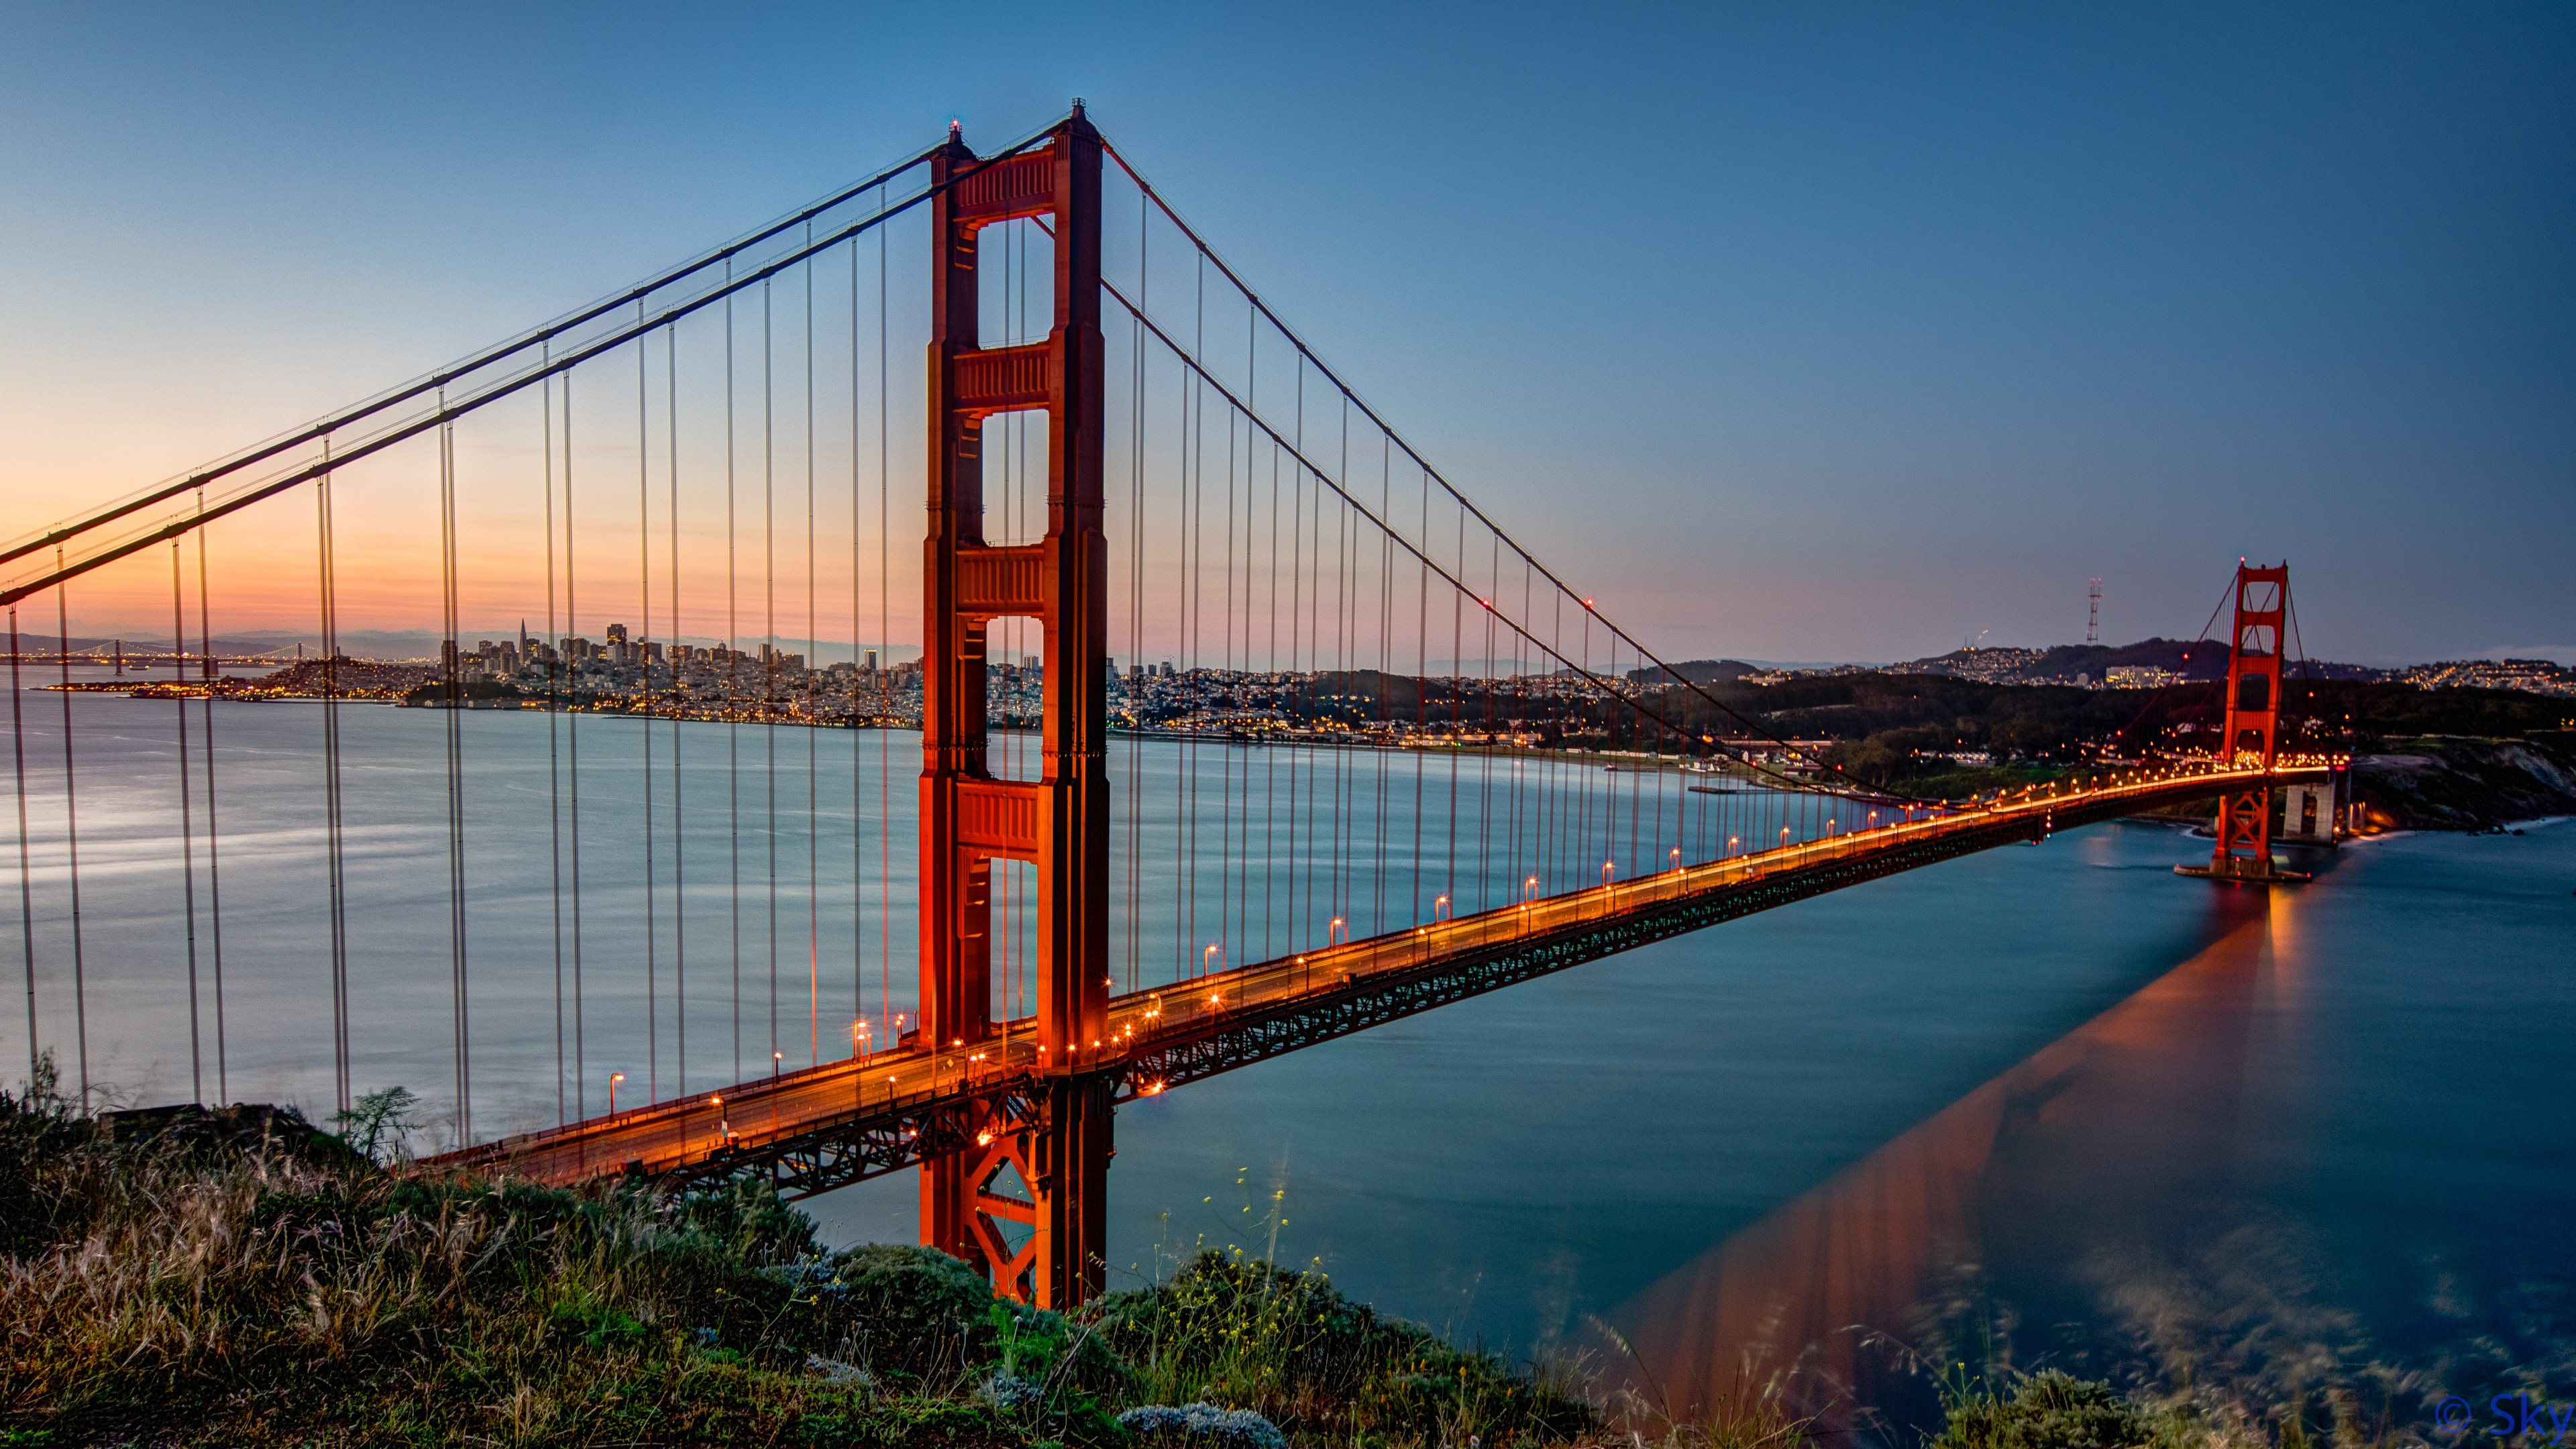 Обои 3840x2160 мост Golden Gate, мост, вантовый мост, extradosed мост, подв...